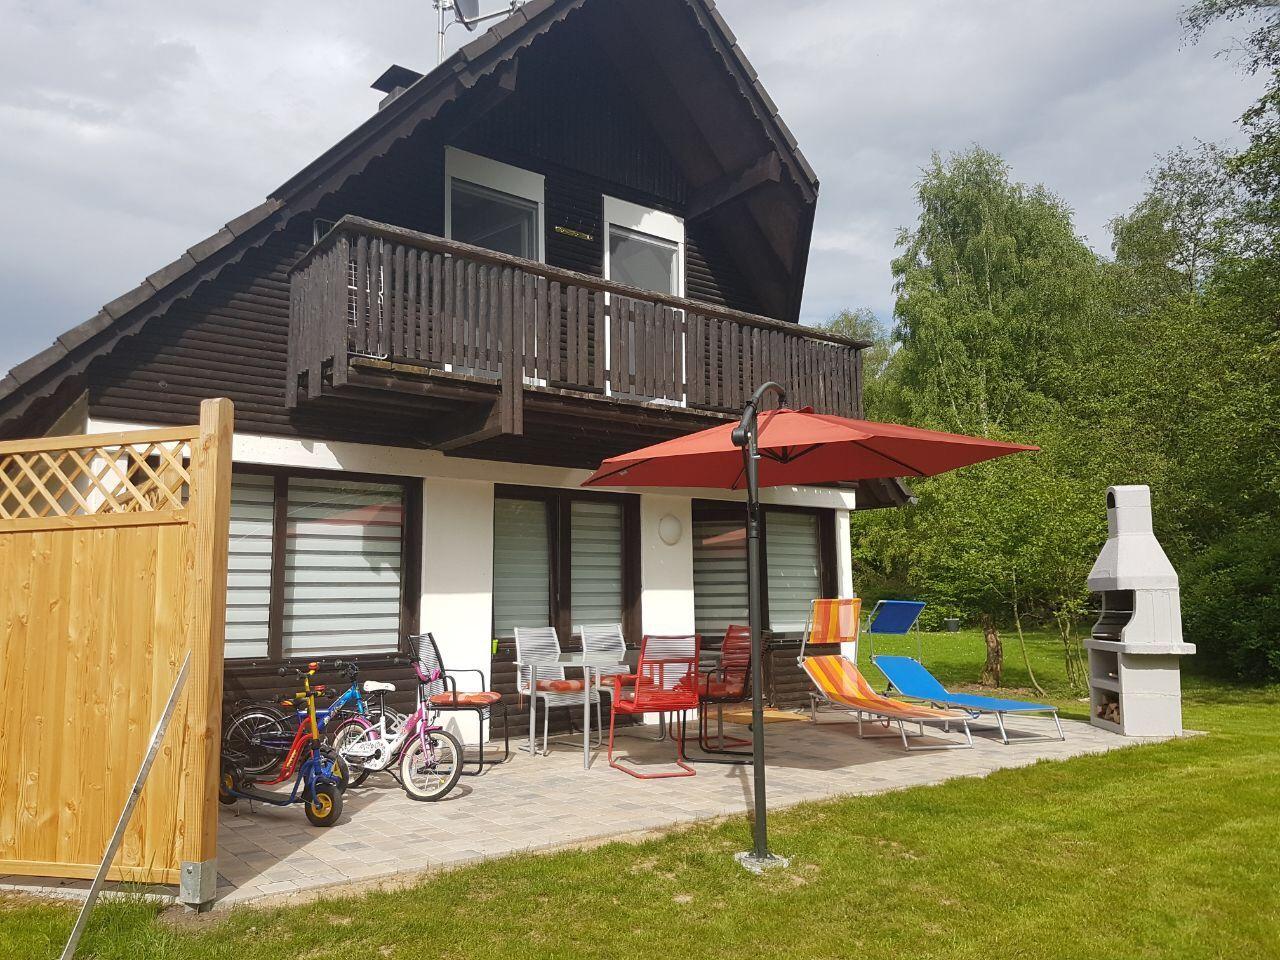 Familienfreundliches Ferienhaus in Feriendorf Silb  in Hessen